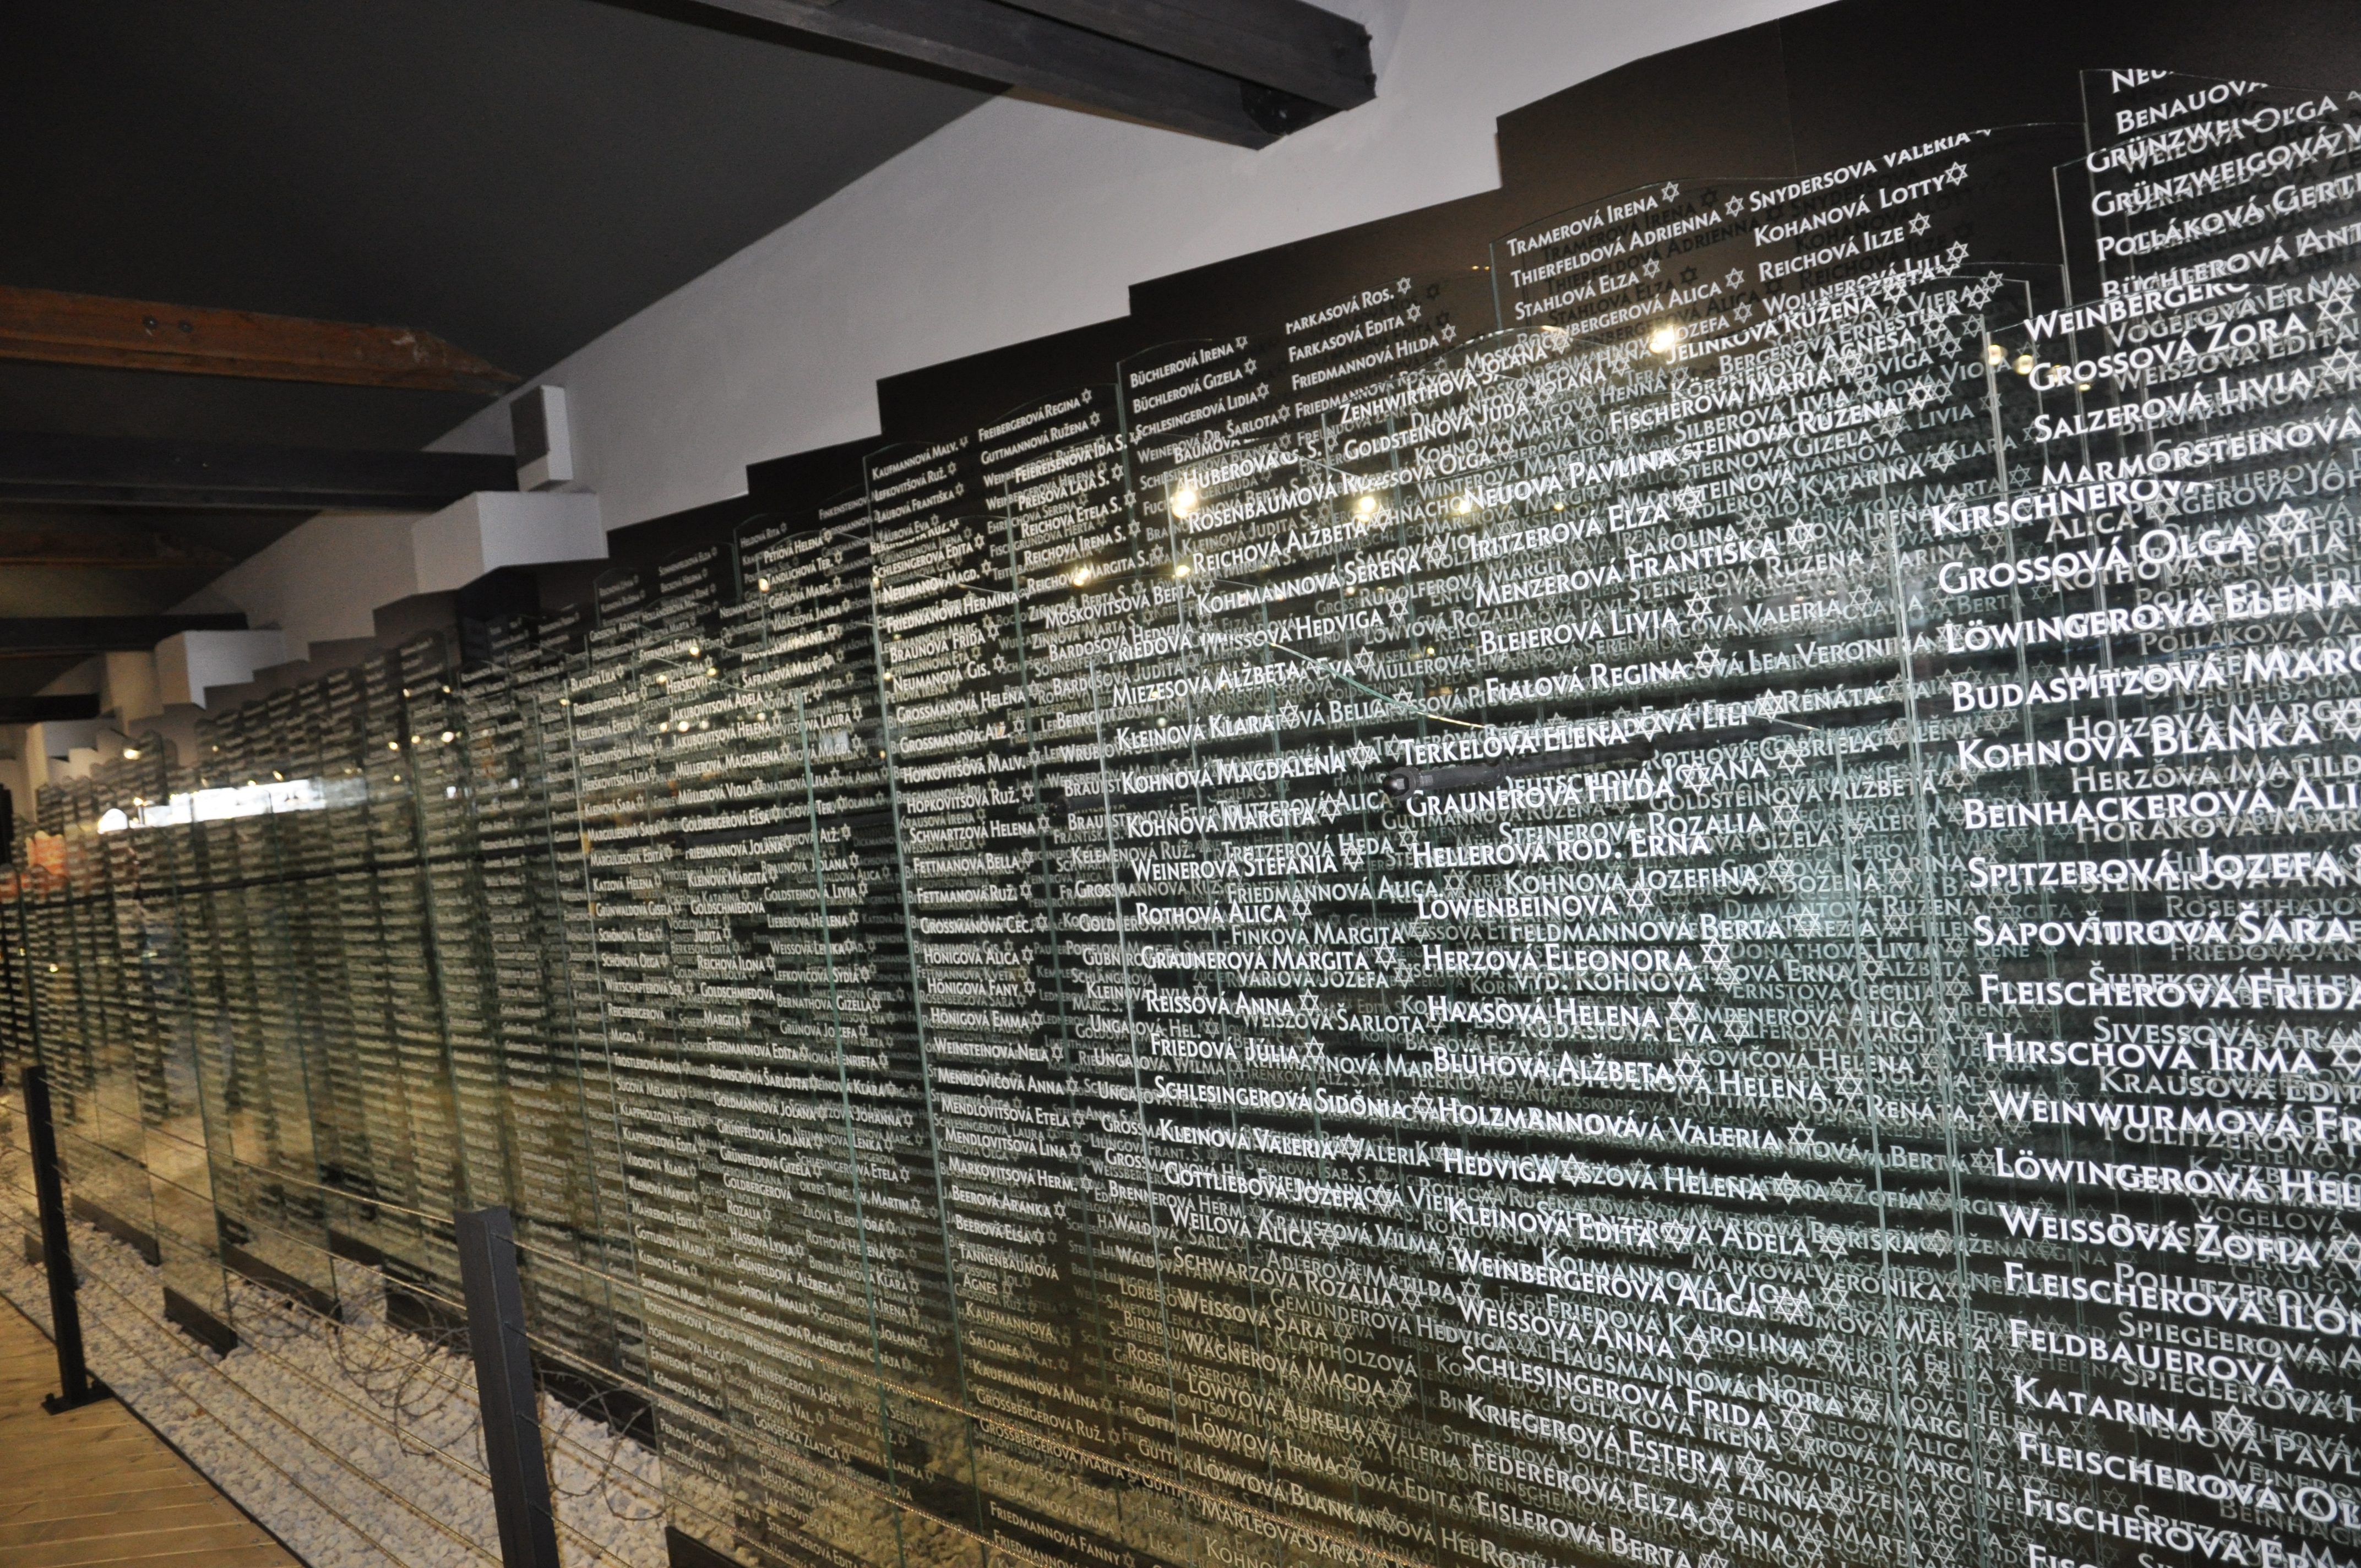 mená nevinných, ktorí zomreli alebo boli transportovaní na toto miesto, foto SNM - Múzeum židovskej kultúry